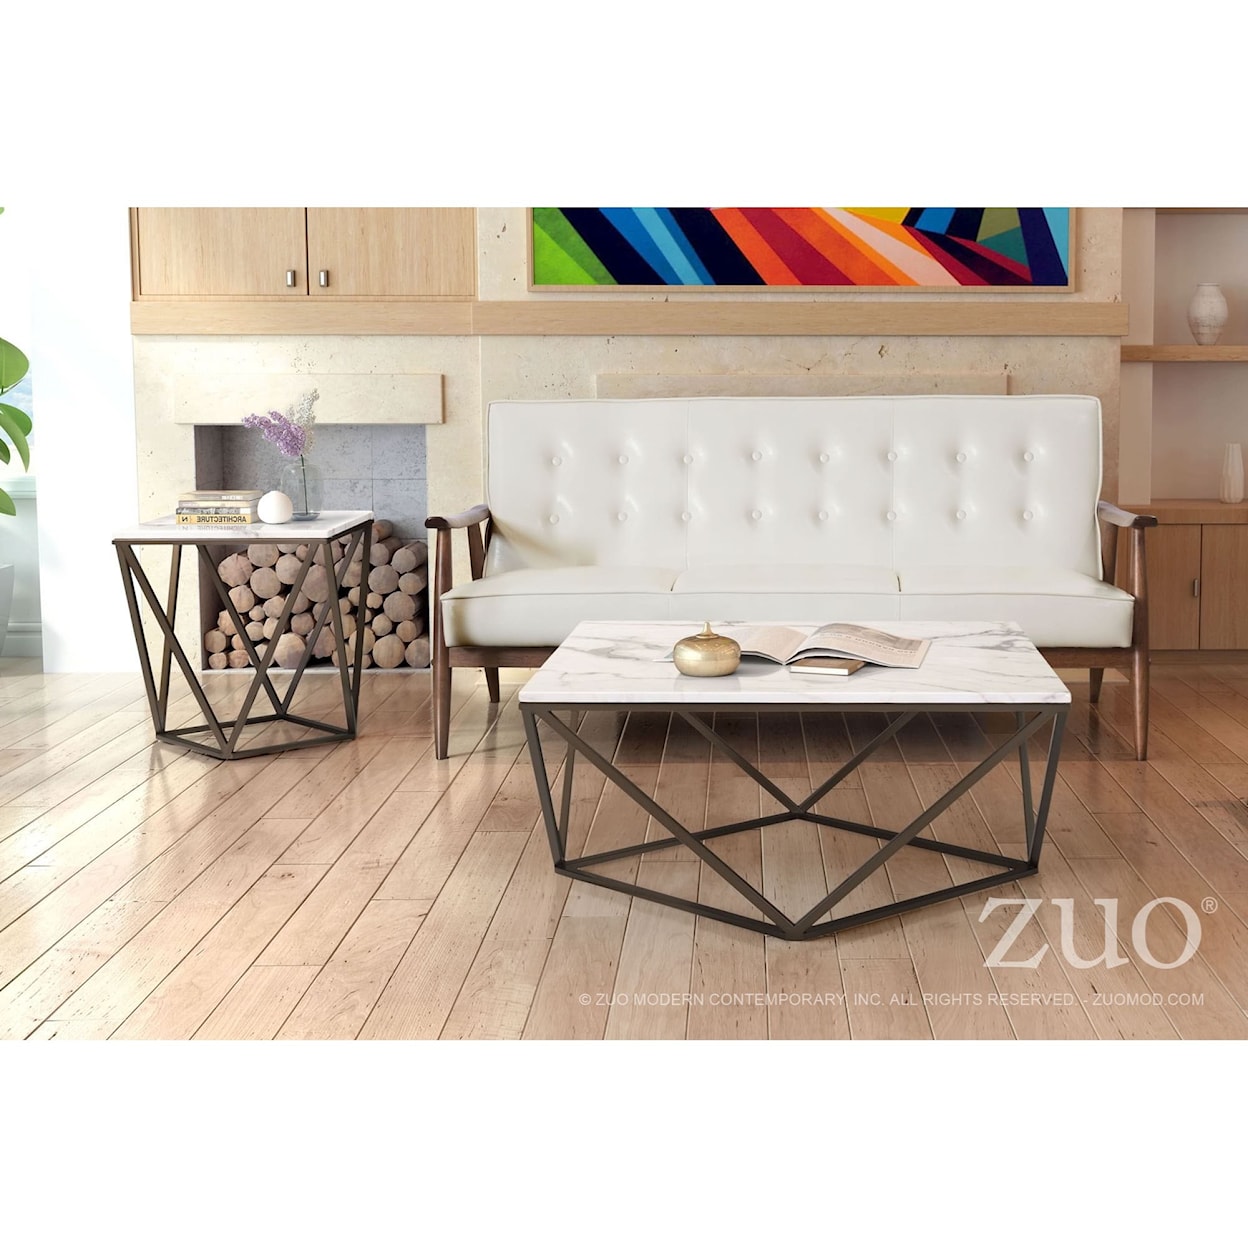 Zuo Tintern Coffee Table